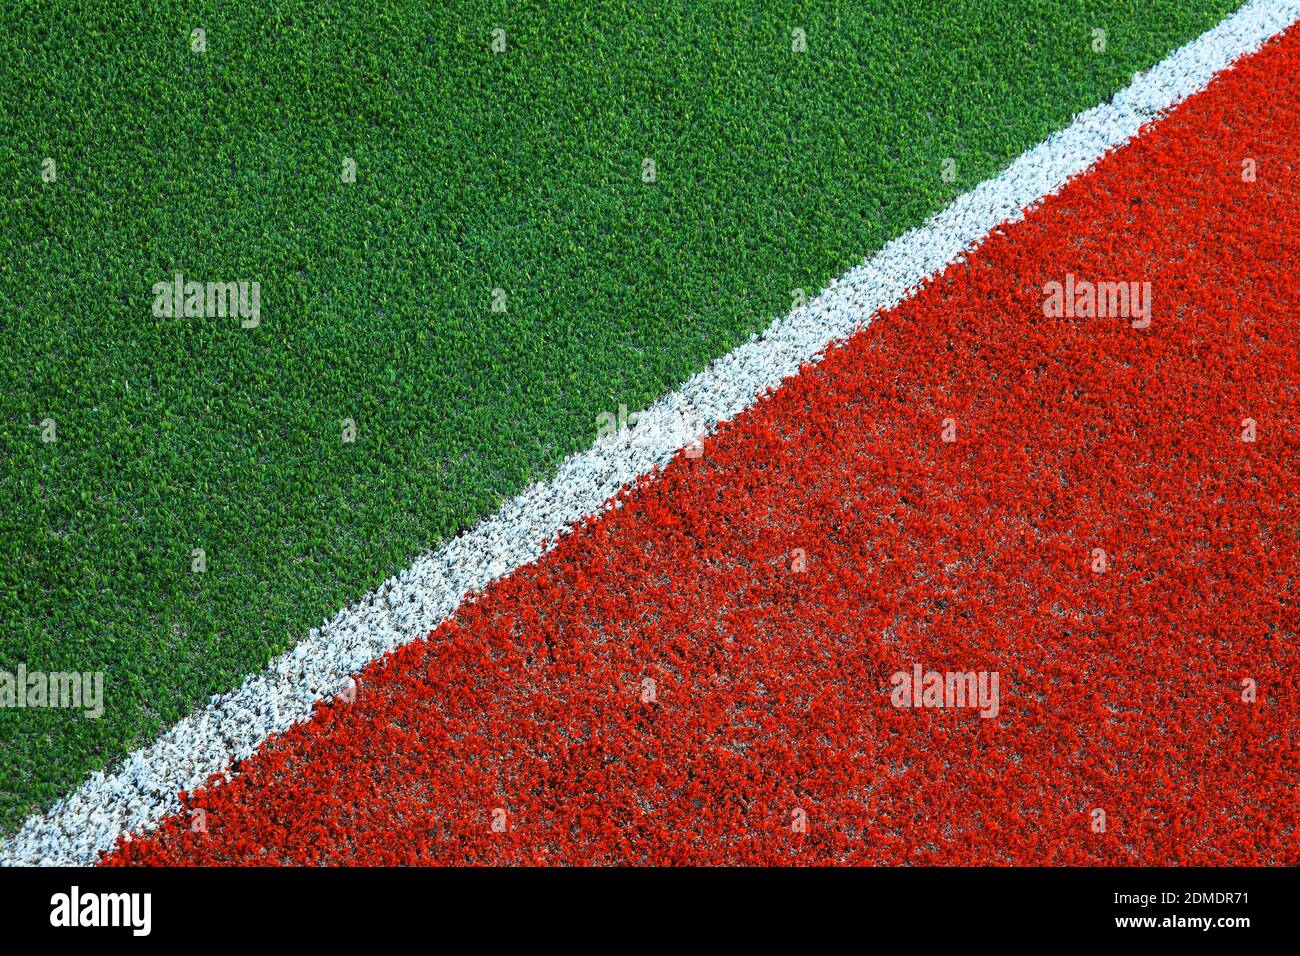 Un alto ángulo de visualización del campo de fútbol Foto de stock